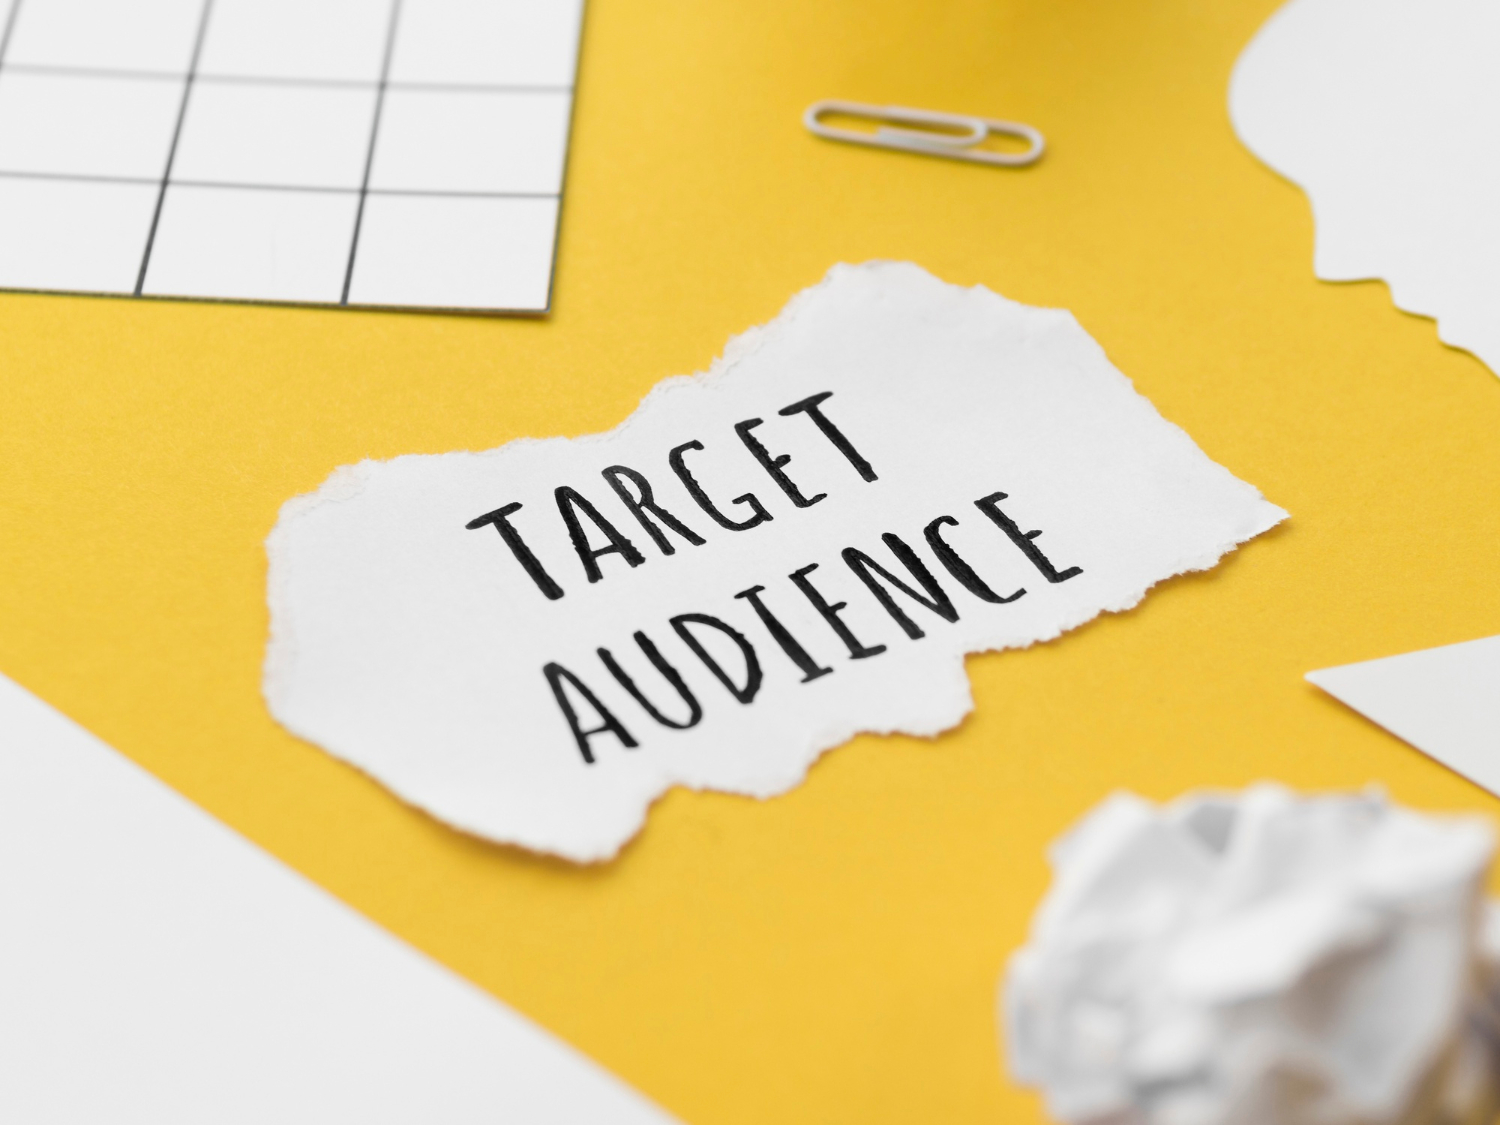 Salah satu manfaat dari menentukan target audience adalah memudahkan pembuatan konten.